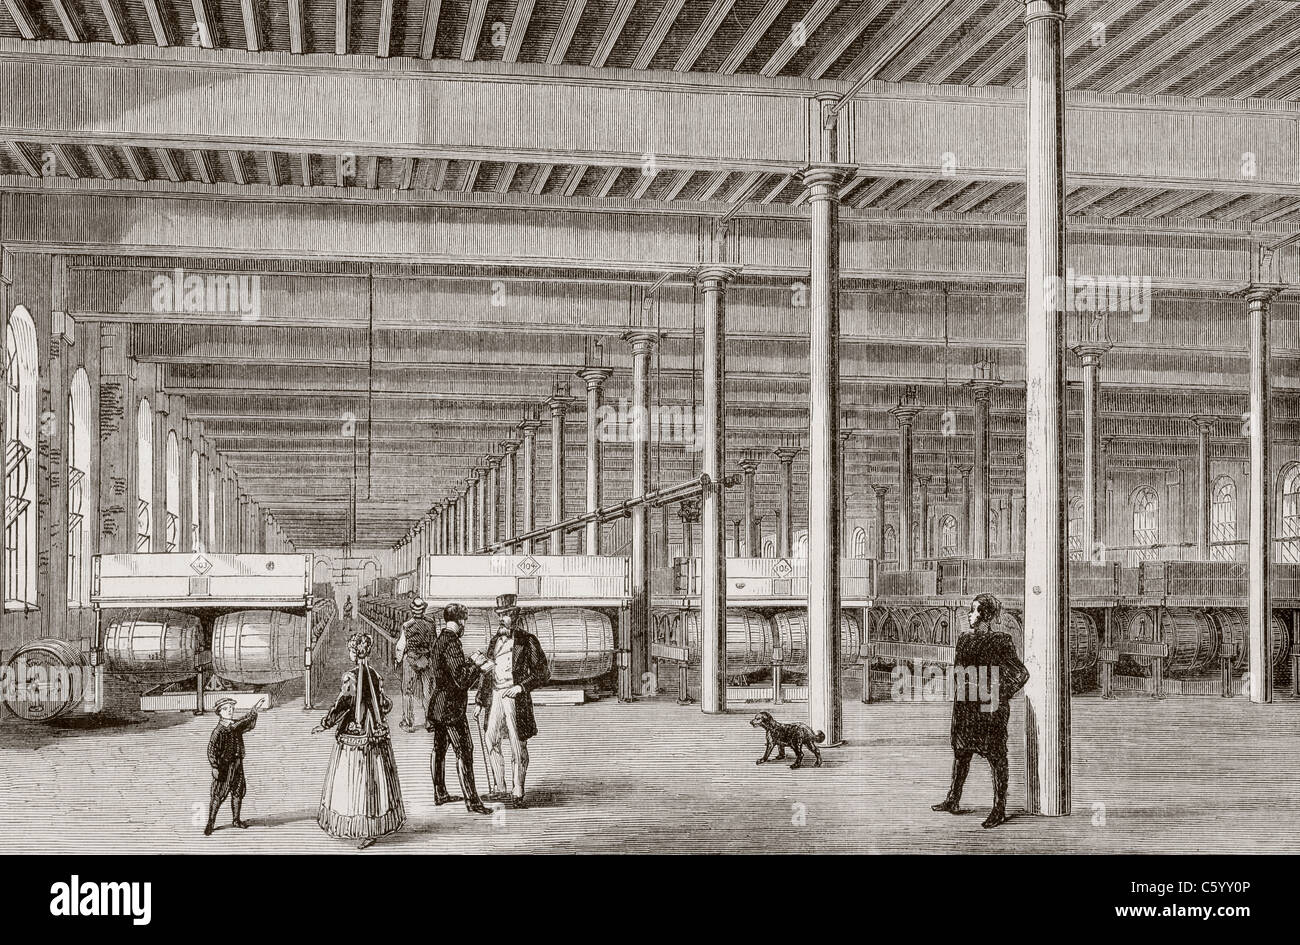 Samuel Allsopp & Sons Brasserie à Burton-on-Trent, en Angleterre dans les années 1860. Banque D'Images